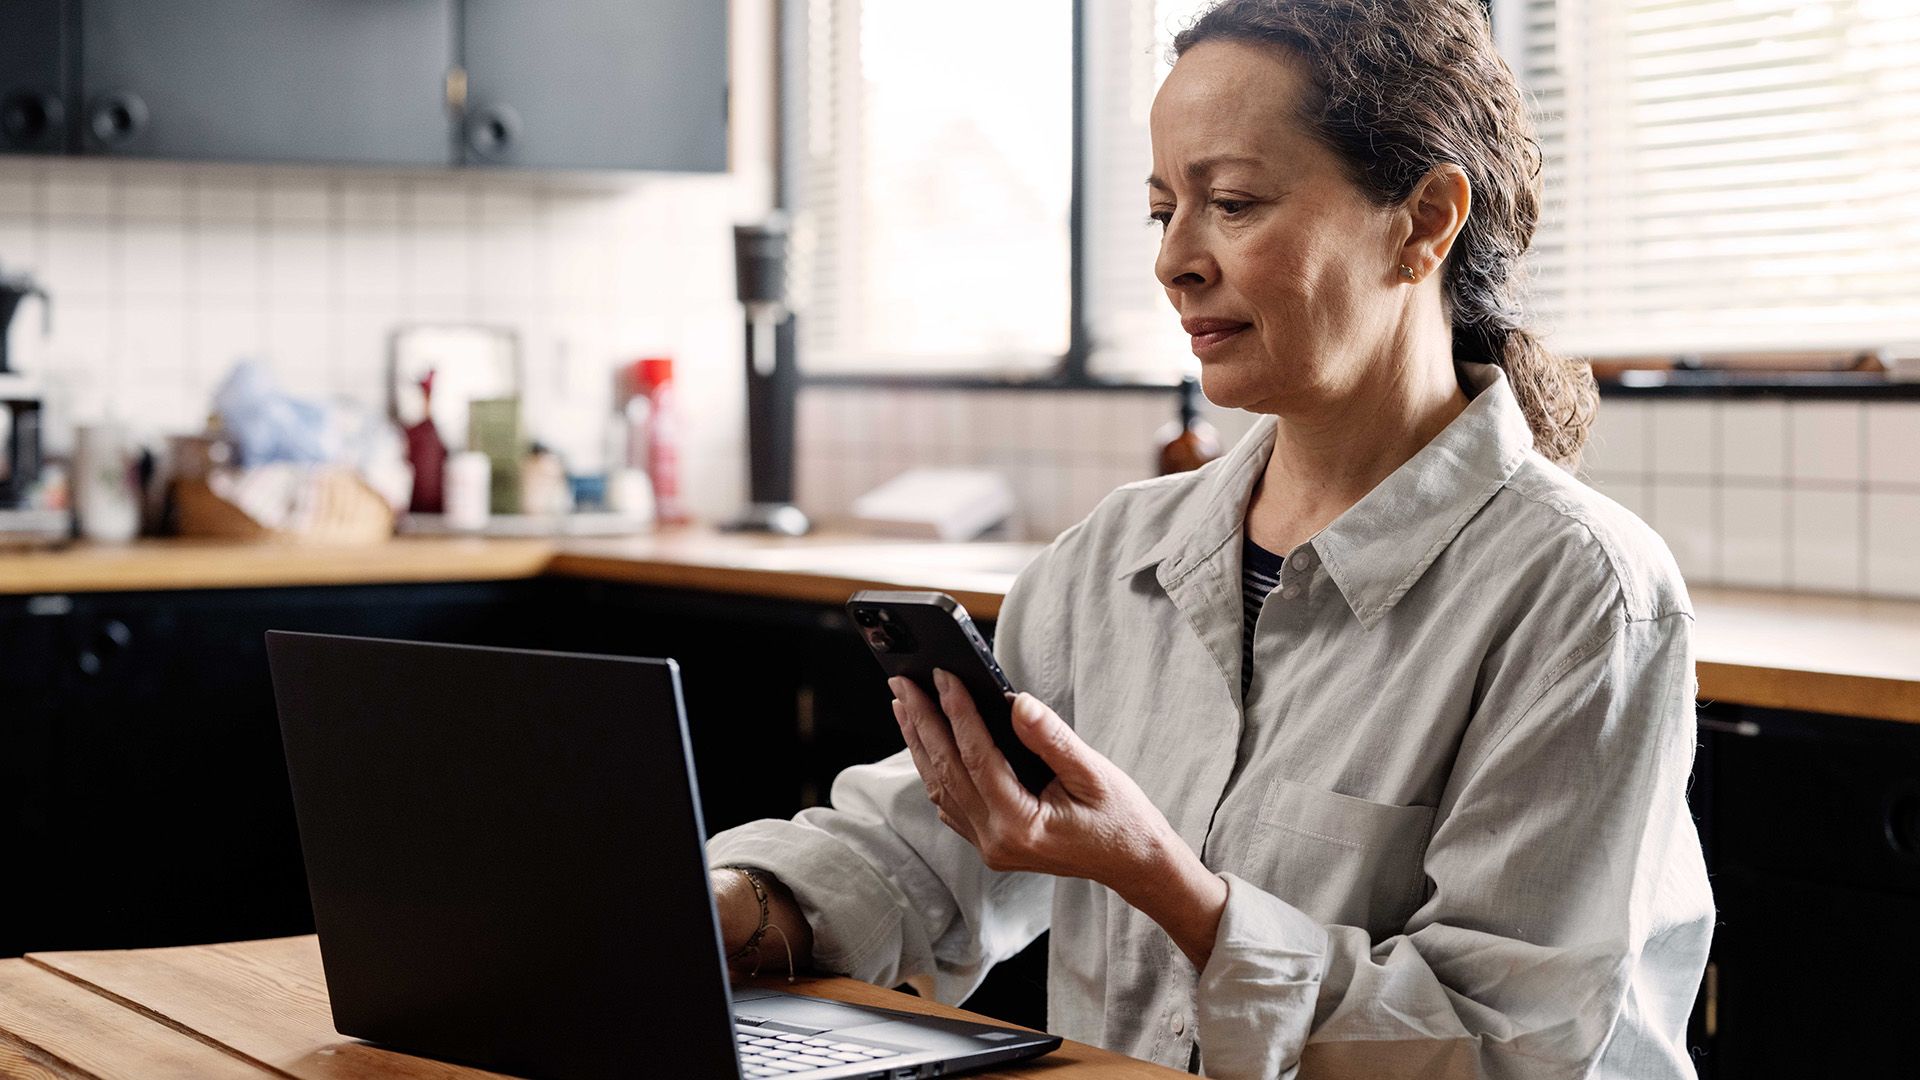 Kvinde foran computer med telefon i hånden, kigger på cyberhjælp, der er en del af hendes indboforsikring